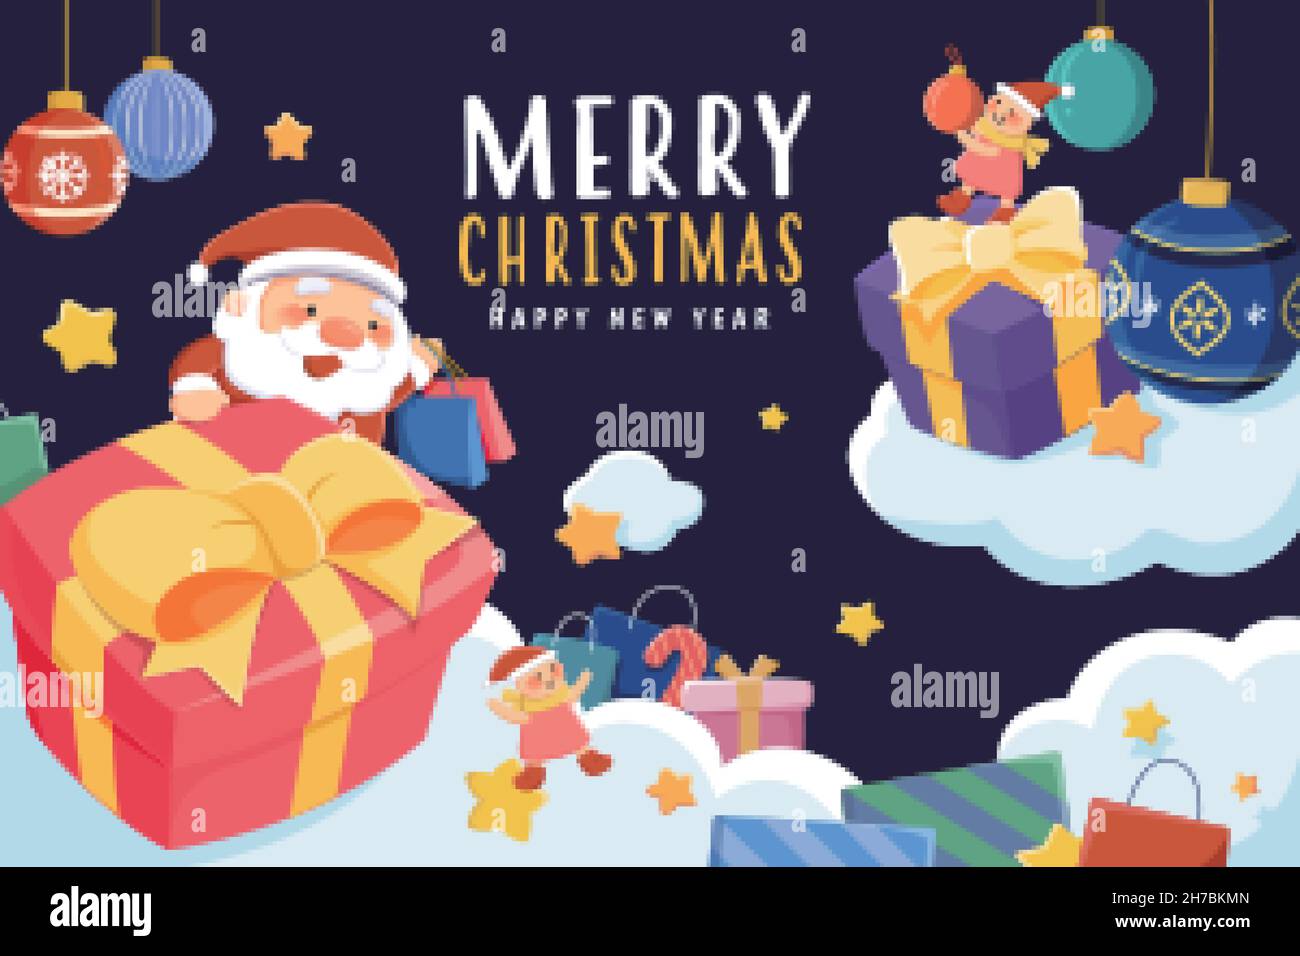 Carte de vœux de joyeux Noël.Illustration plate du Père Noël et des elfes avec beaucoup de cadeaux stockés sur des nuages sur fond bleu foncé Illustration de Vecteur